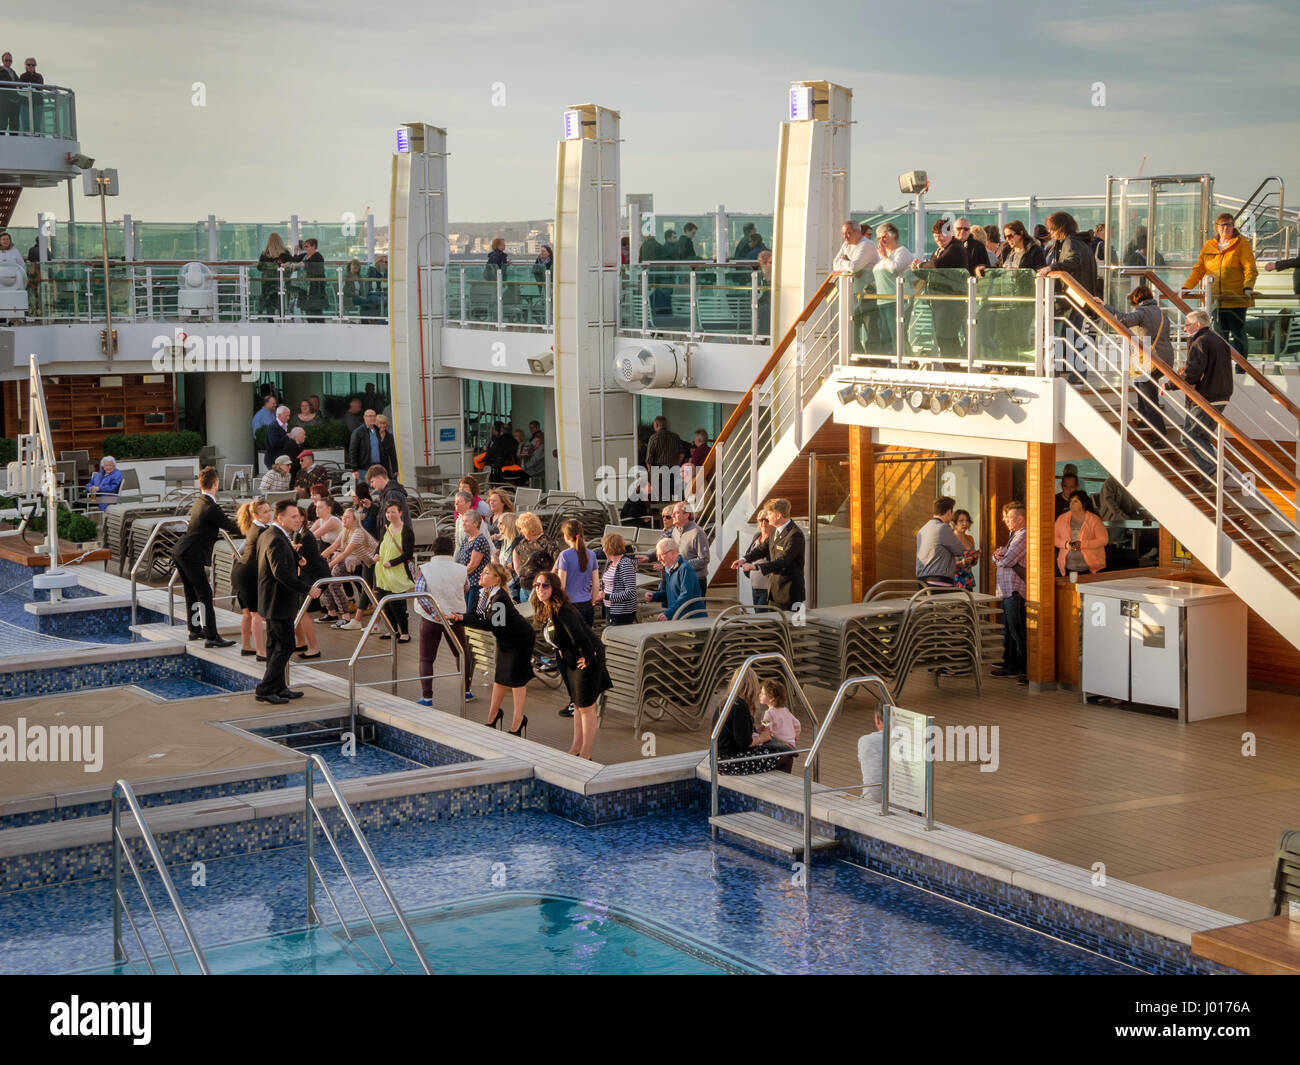 LA CORUNA, ESPAGNE - 27 mars 2017 : passagers bénéficient à la piscine sur le pont supérieur du Britannia de croisière de luxe de P&O Cruises Company à La Coruna Banque D'Images